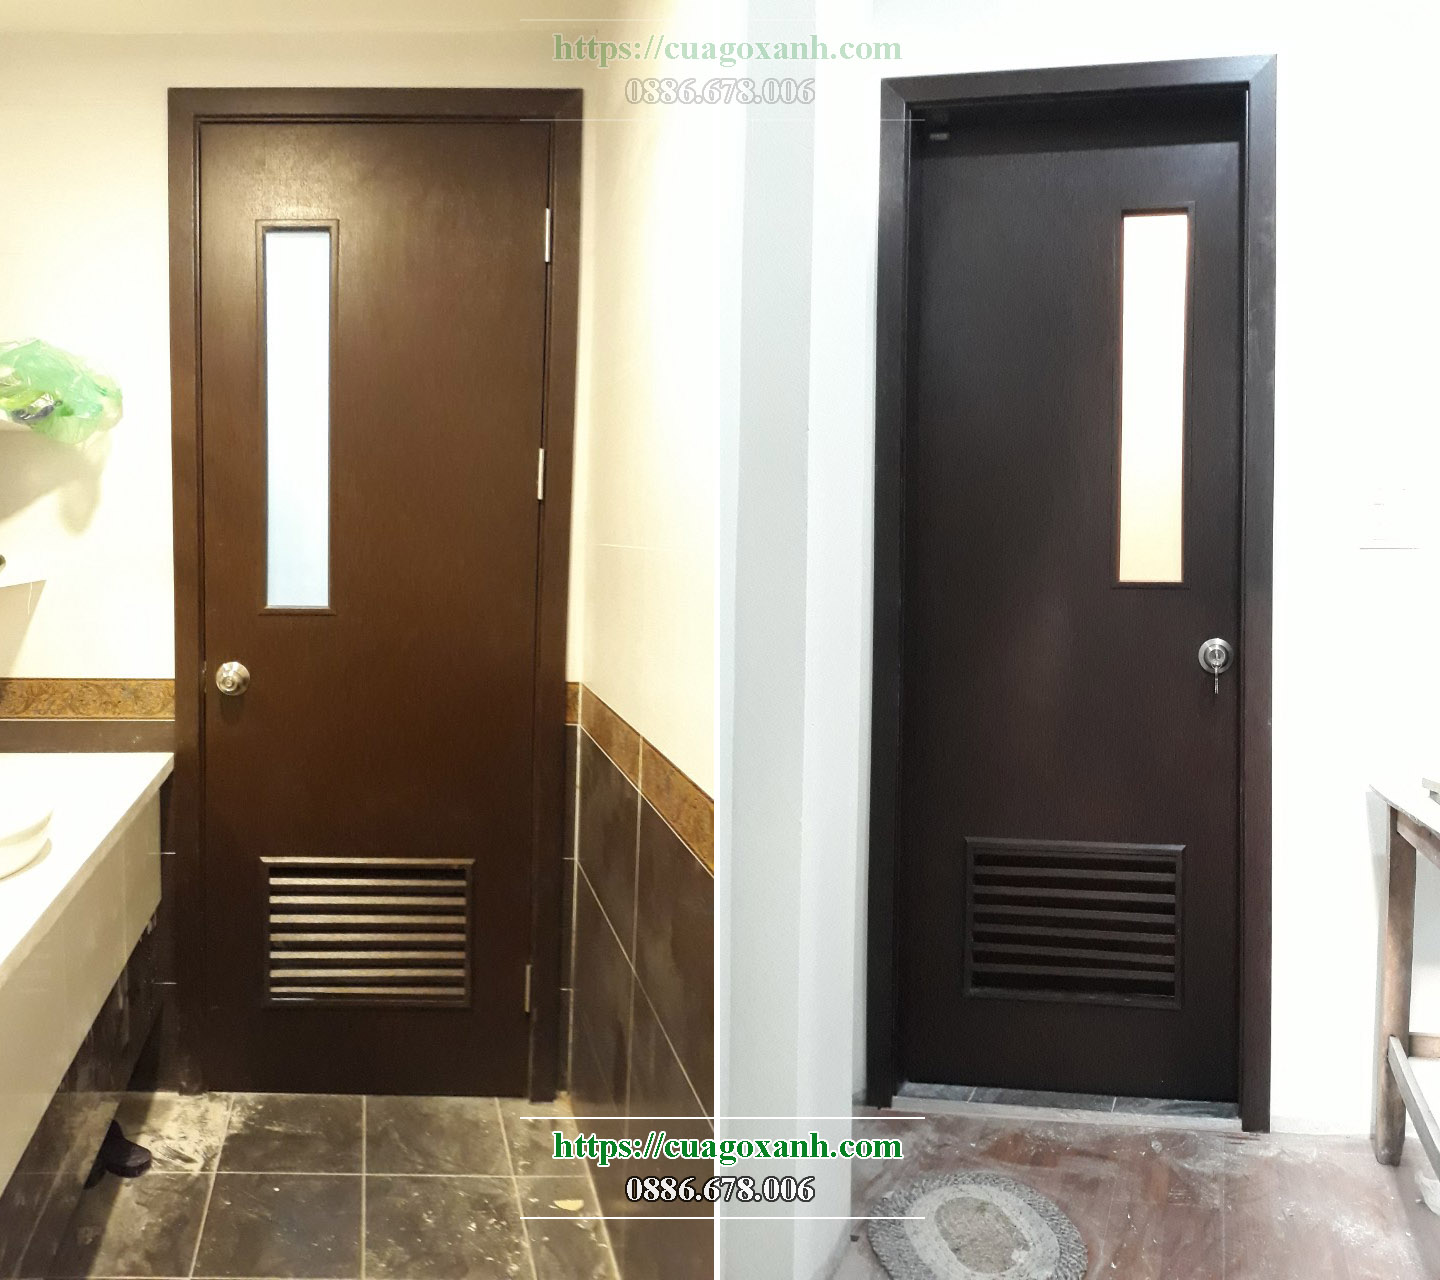 Mẫu cửa gỗ composite chịu nước lắp thường lắp đặt cho phòng vệ sinh